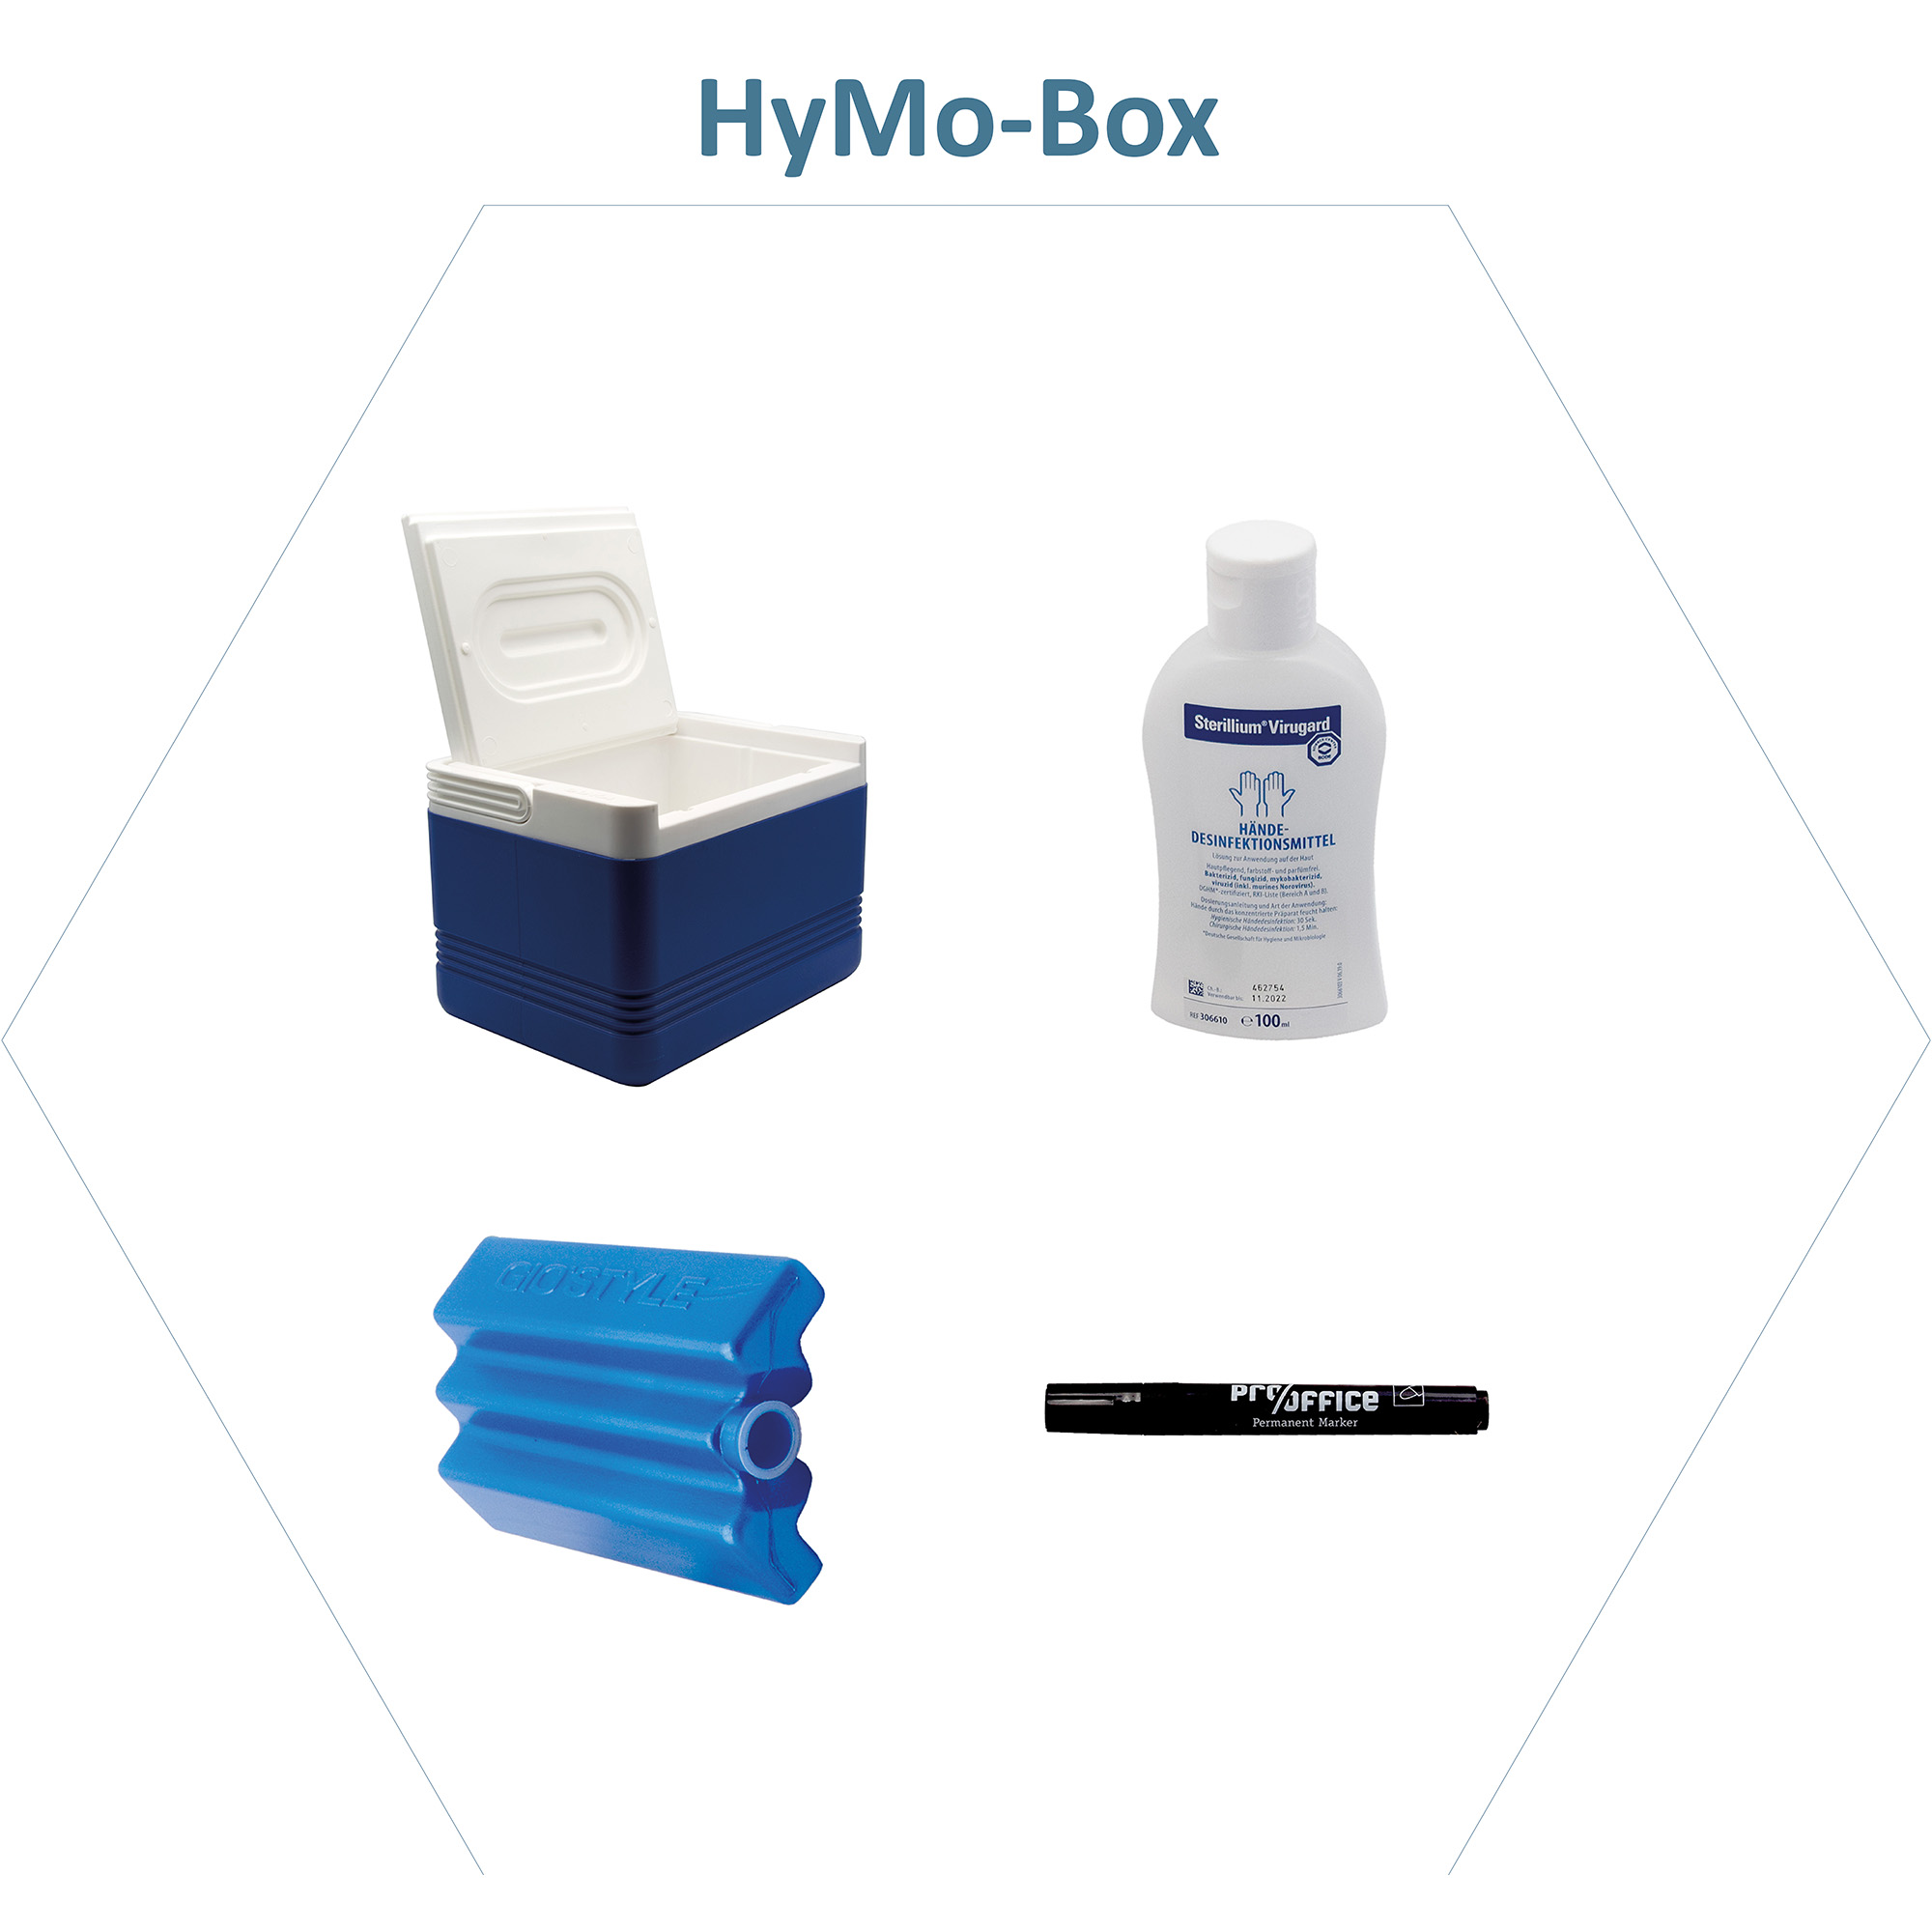 Ihre HyMo-Box nach Wunsch